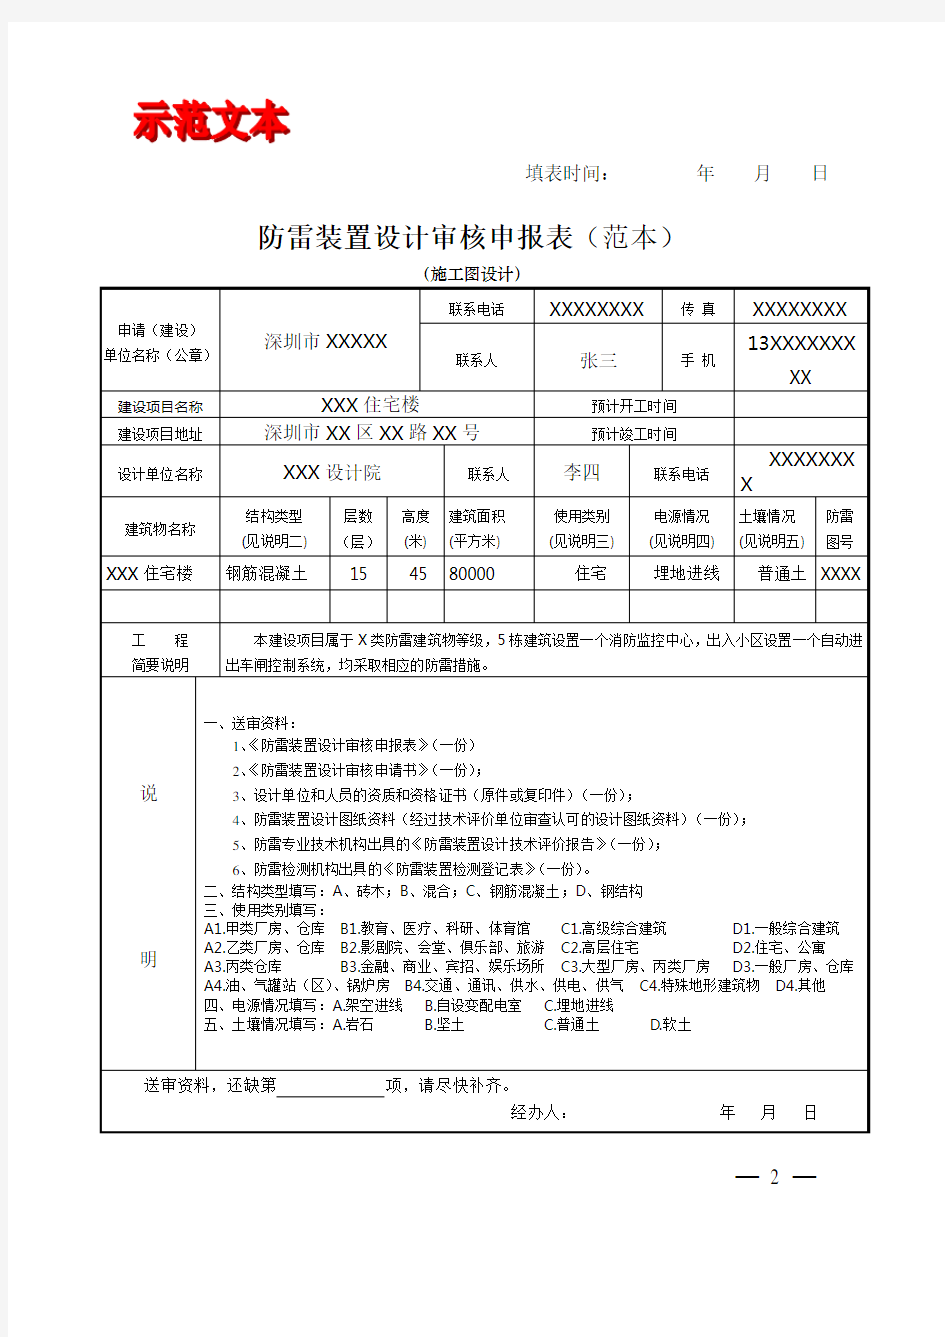 防雷装置设计审核申报表(范本)